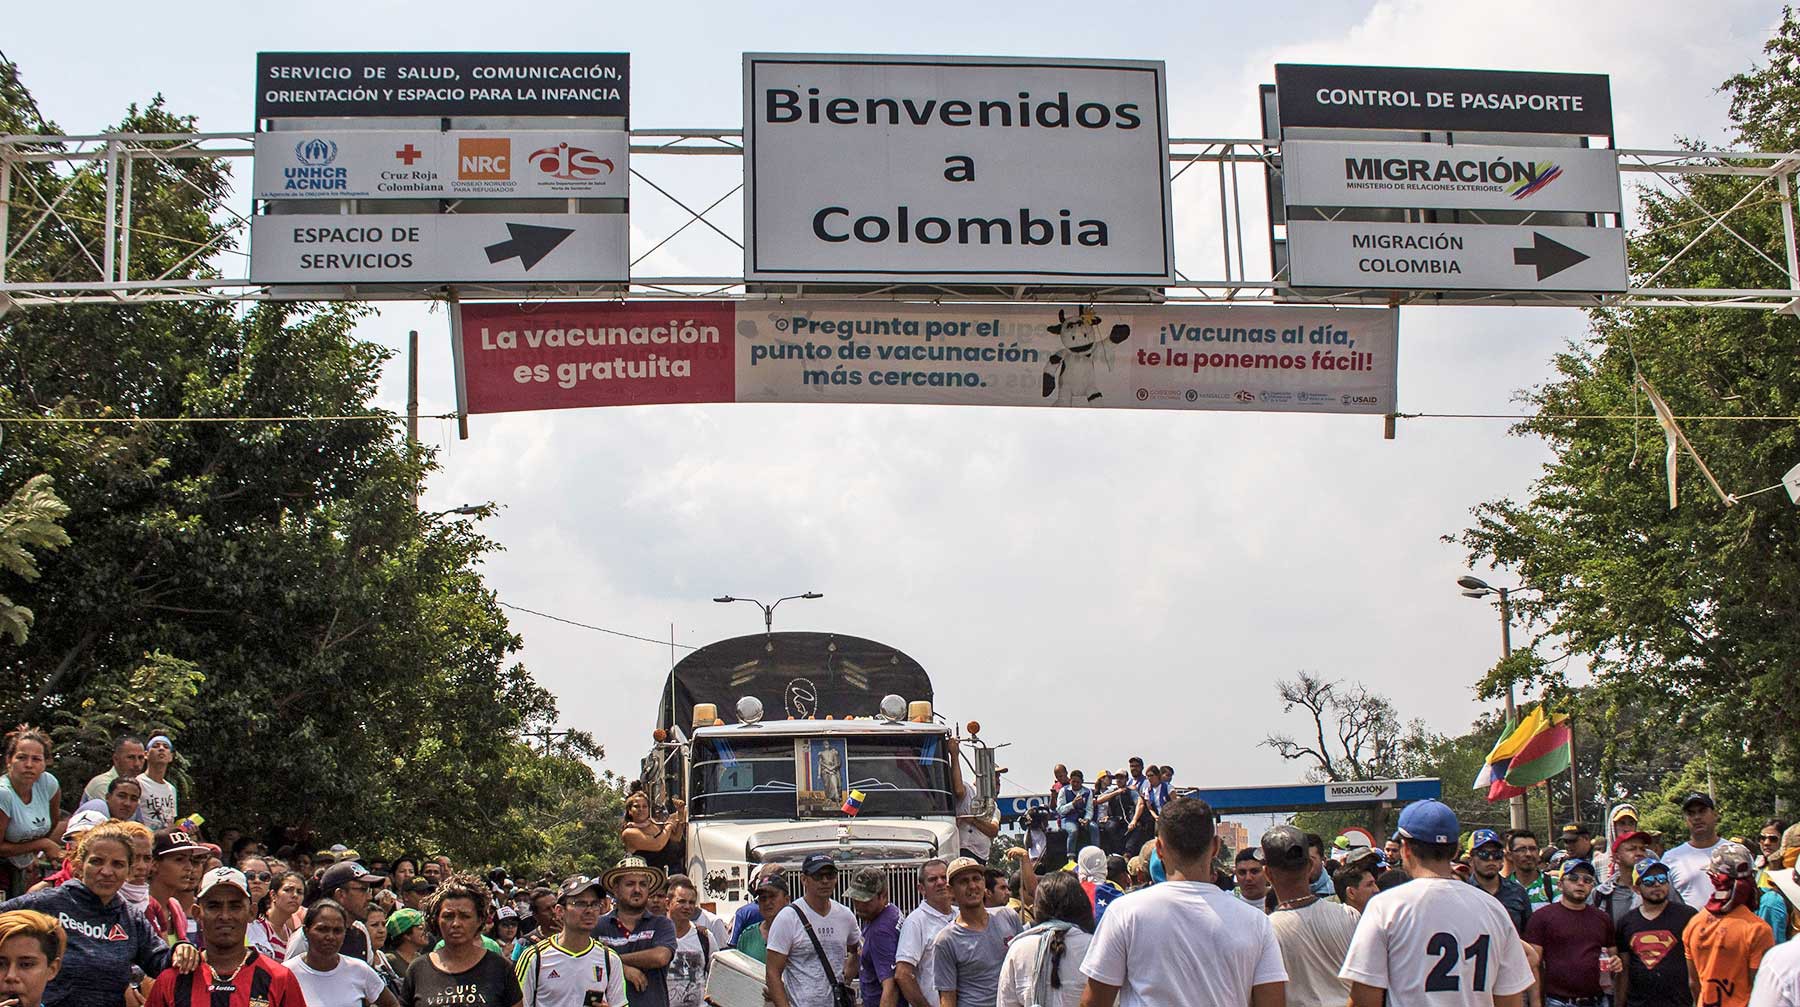 Dailystorm - СМИ: К границам Венесуэлы прибыла гуманитарная помощь